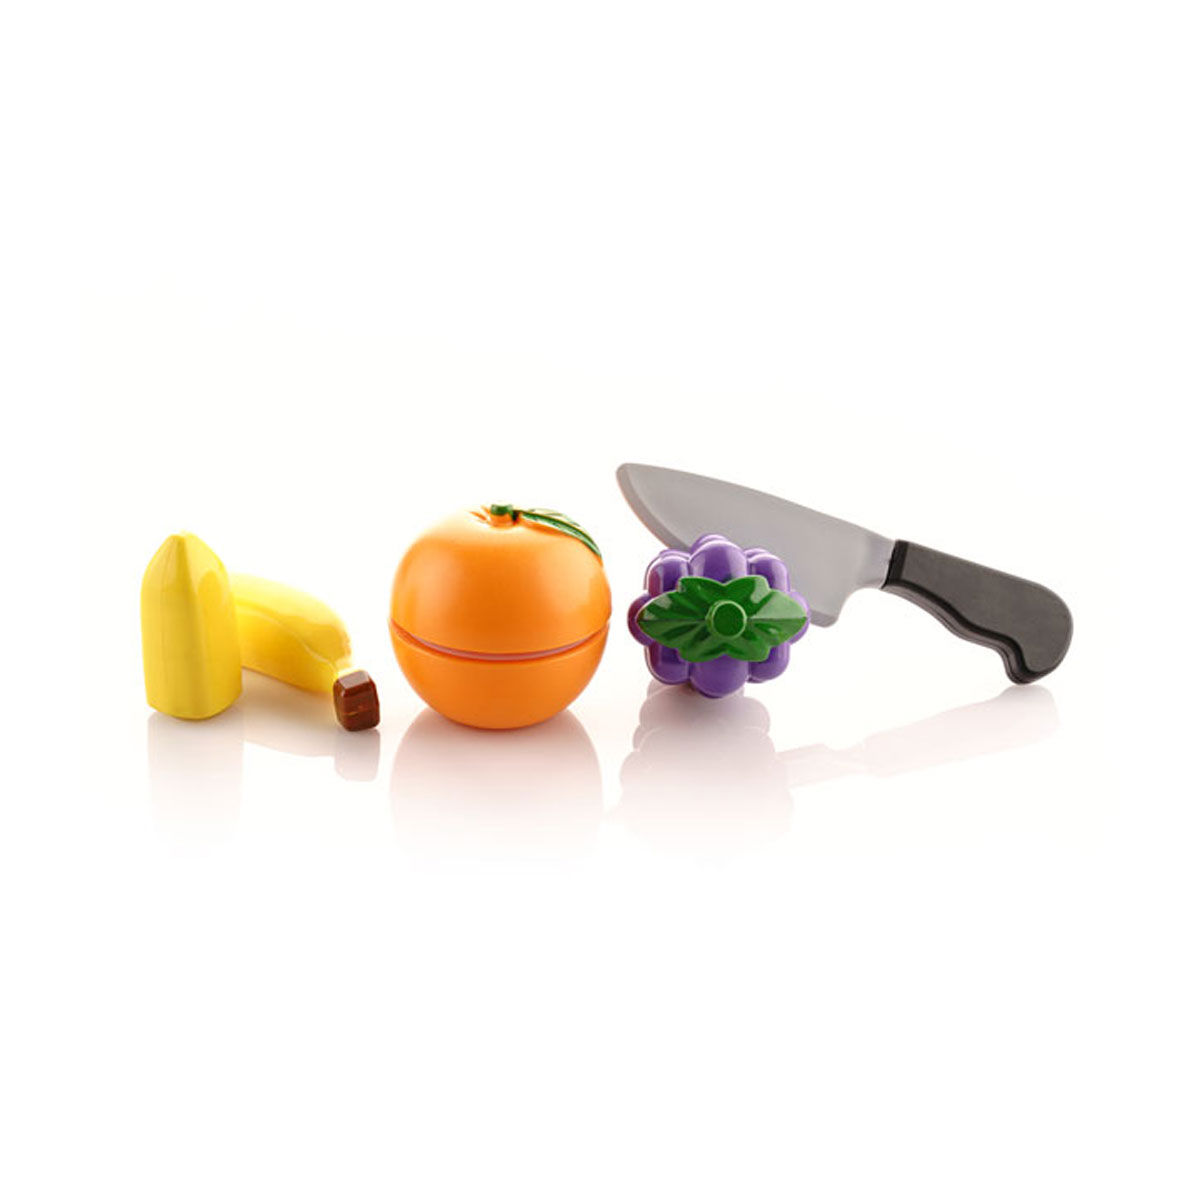 اسباب بازی میوه های برشی انگور و موز و پرتقال